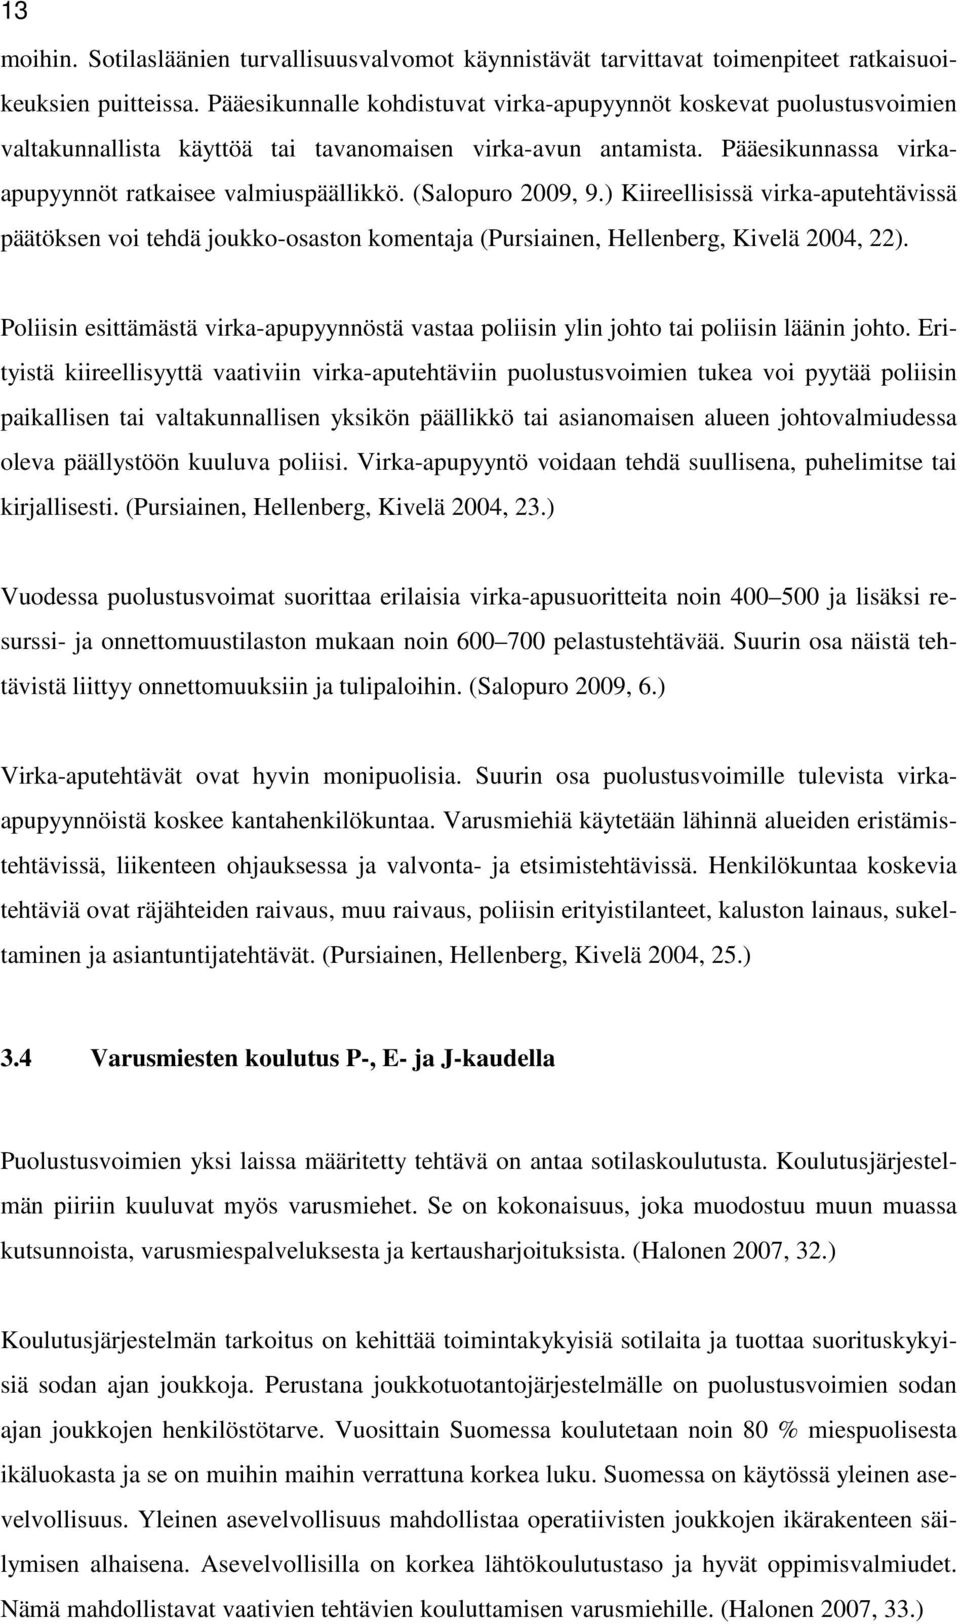 (Salopuro 2009, 9.) Kiireellisissä virka-aputehtävissä päätöksen voi tehdä joukko-osaston komentaja (Pursiainen, Hellenberg, Kivelä 2004, 22).